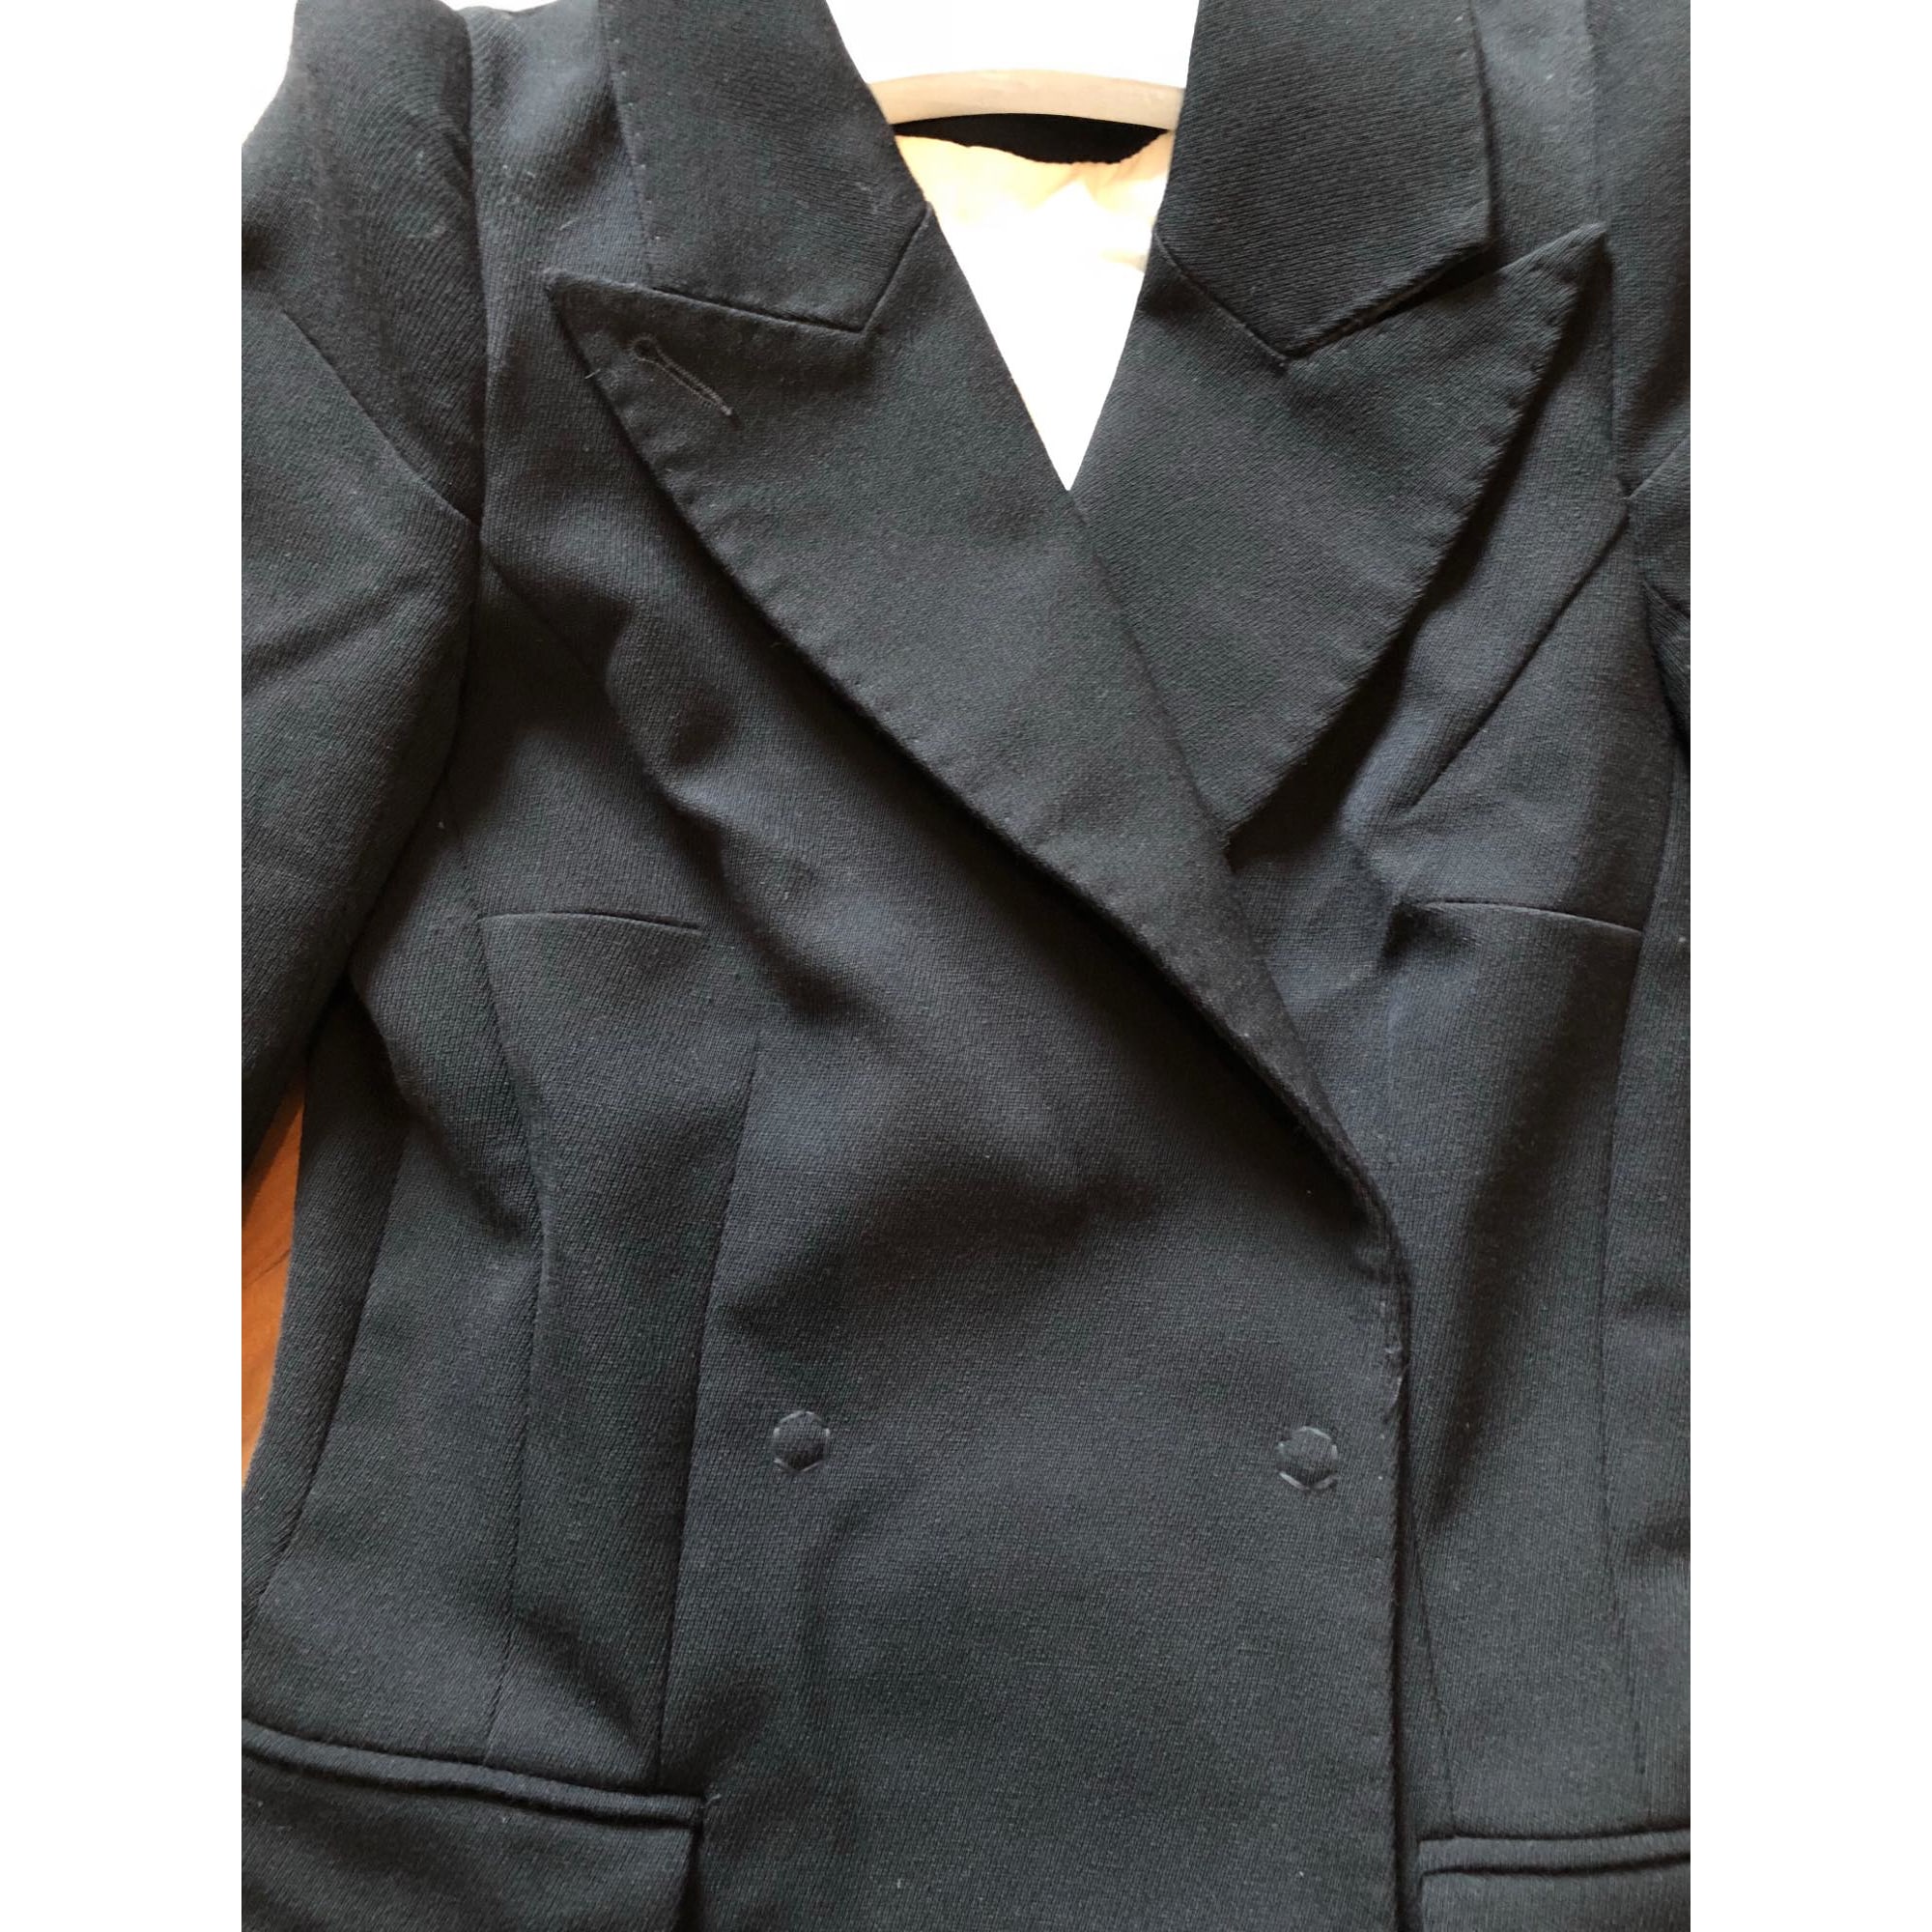 Blazer, veste tailleur MAISON MARTIN MARGIELA POUR H&M 34 (XS, T0) noir -  6807832